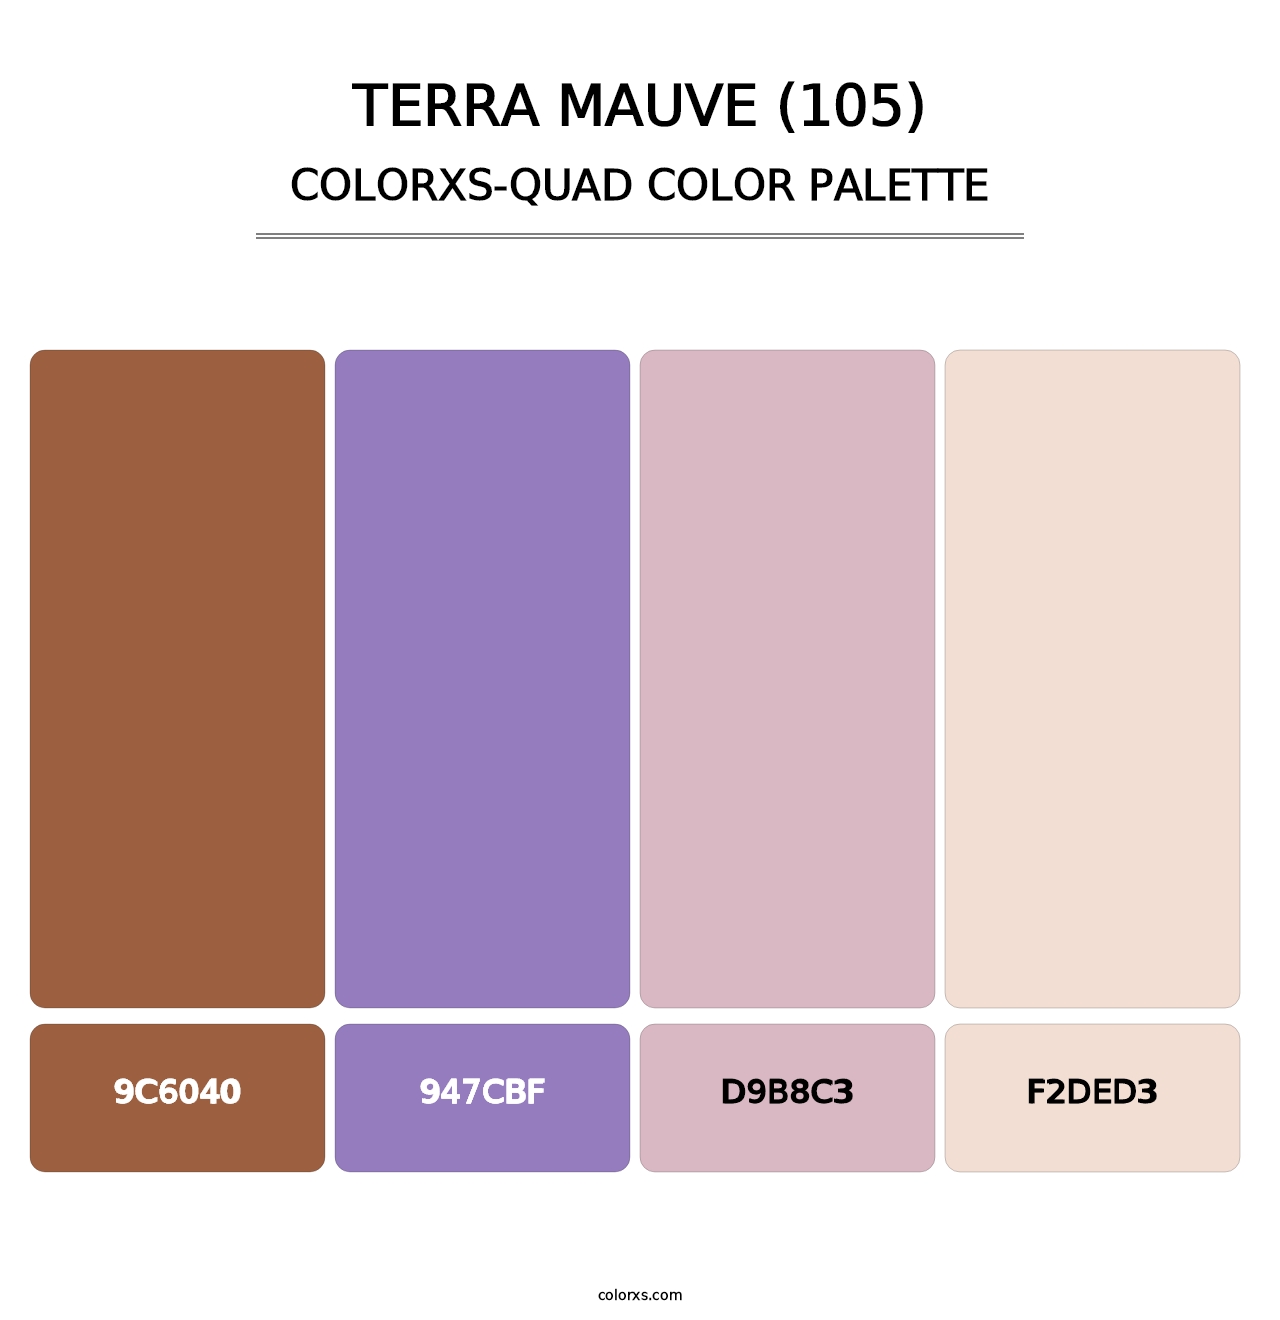 Terra Mauve (105) - Colorxs Quad Palette